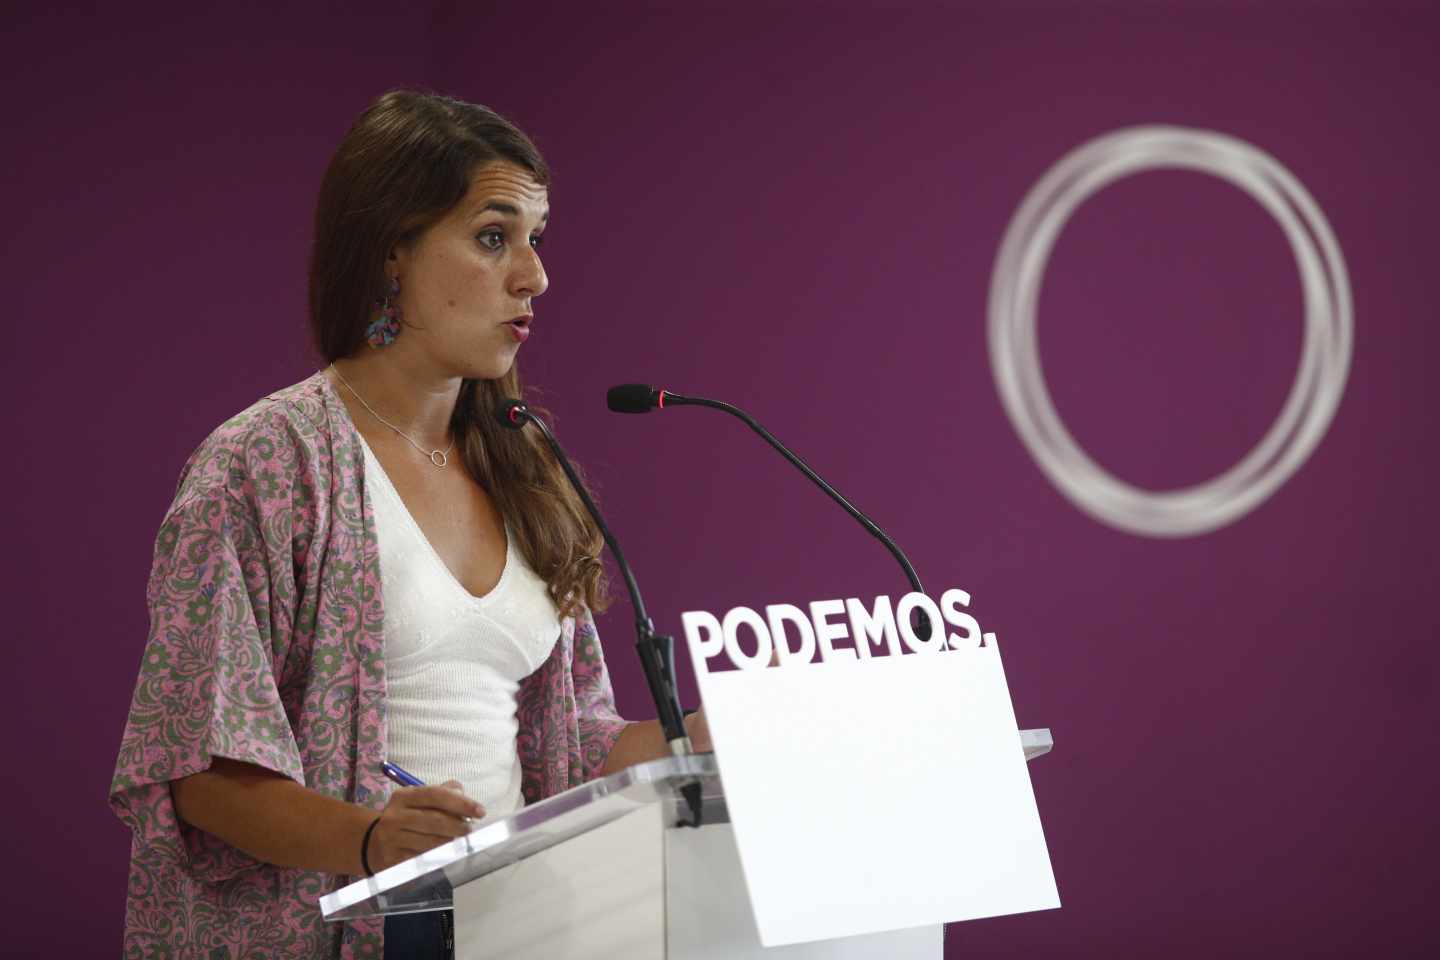 La portavoz del Consejo de Coordinación de Podemos Noelia Vera comparece ante los medios.